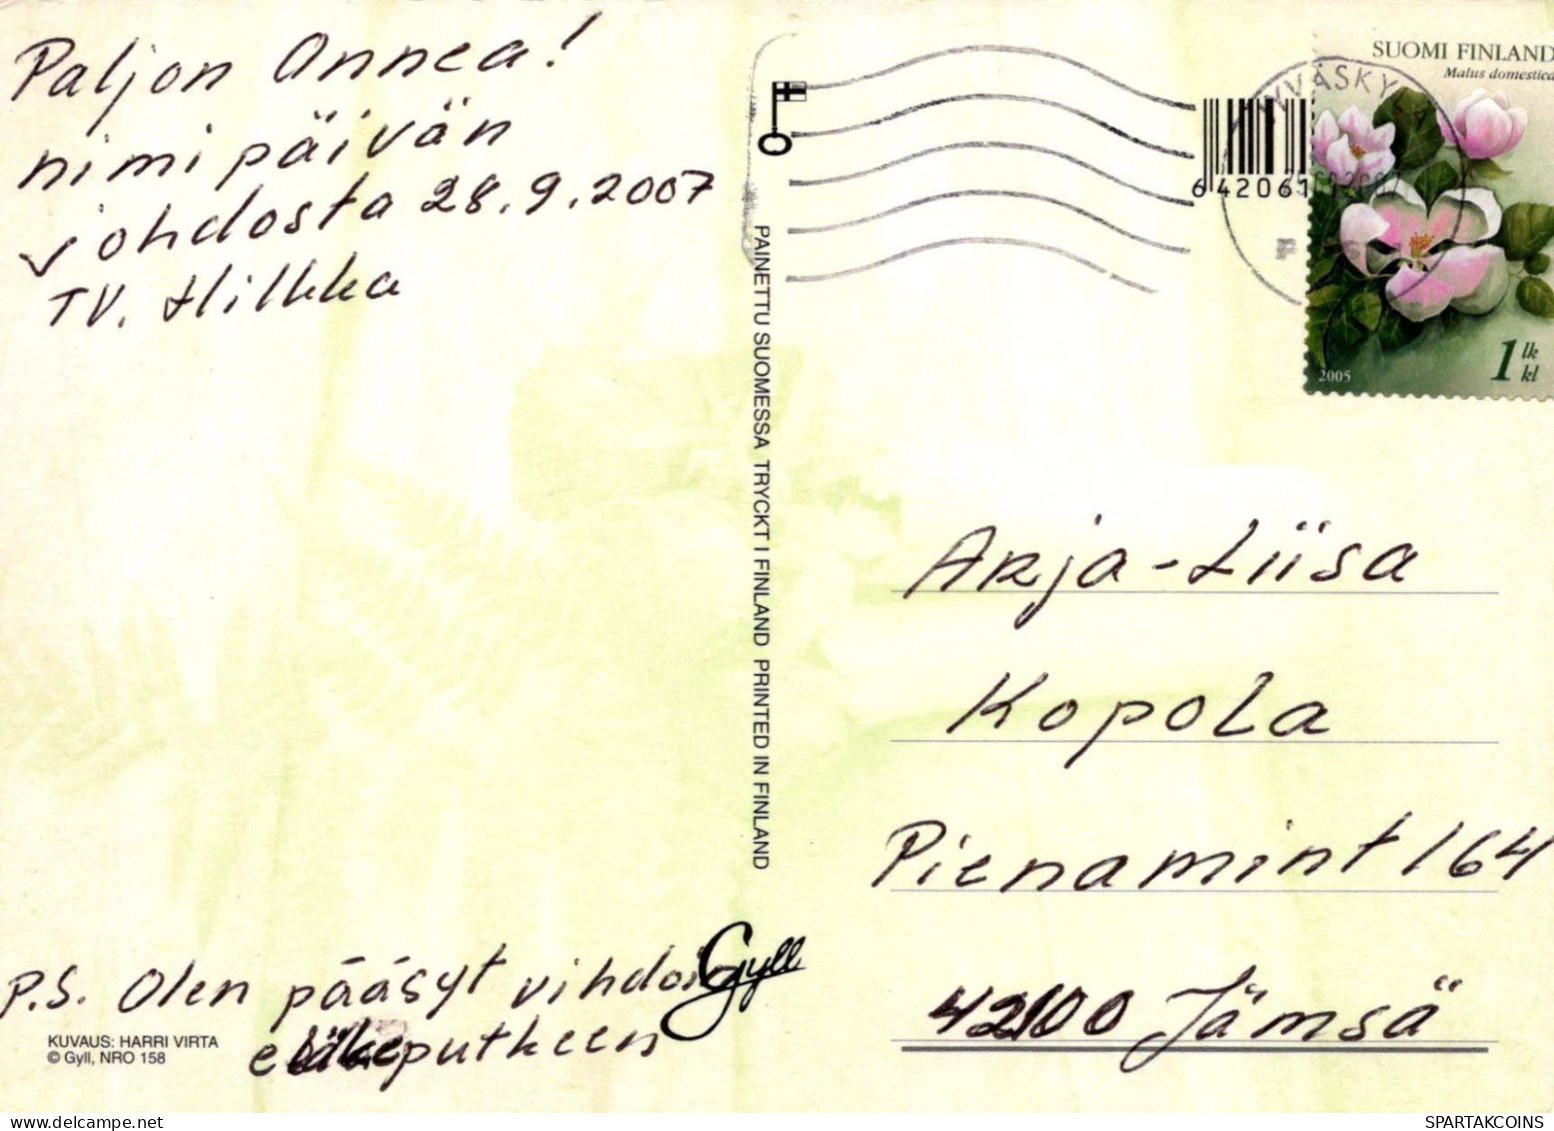 FLEURS Vintage Carte Postale CPSM #PBZ113.FR - Flores